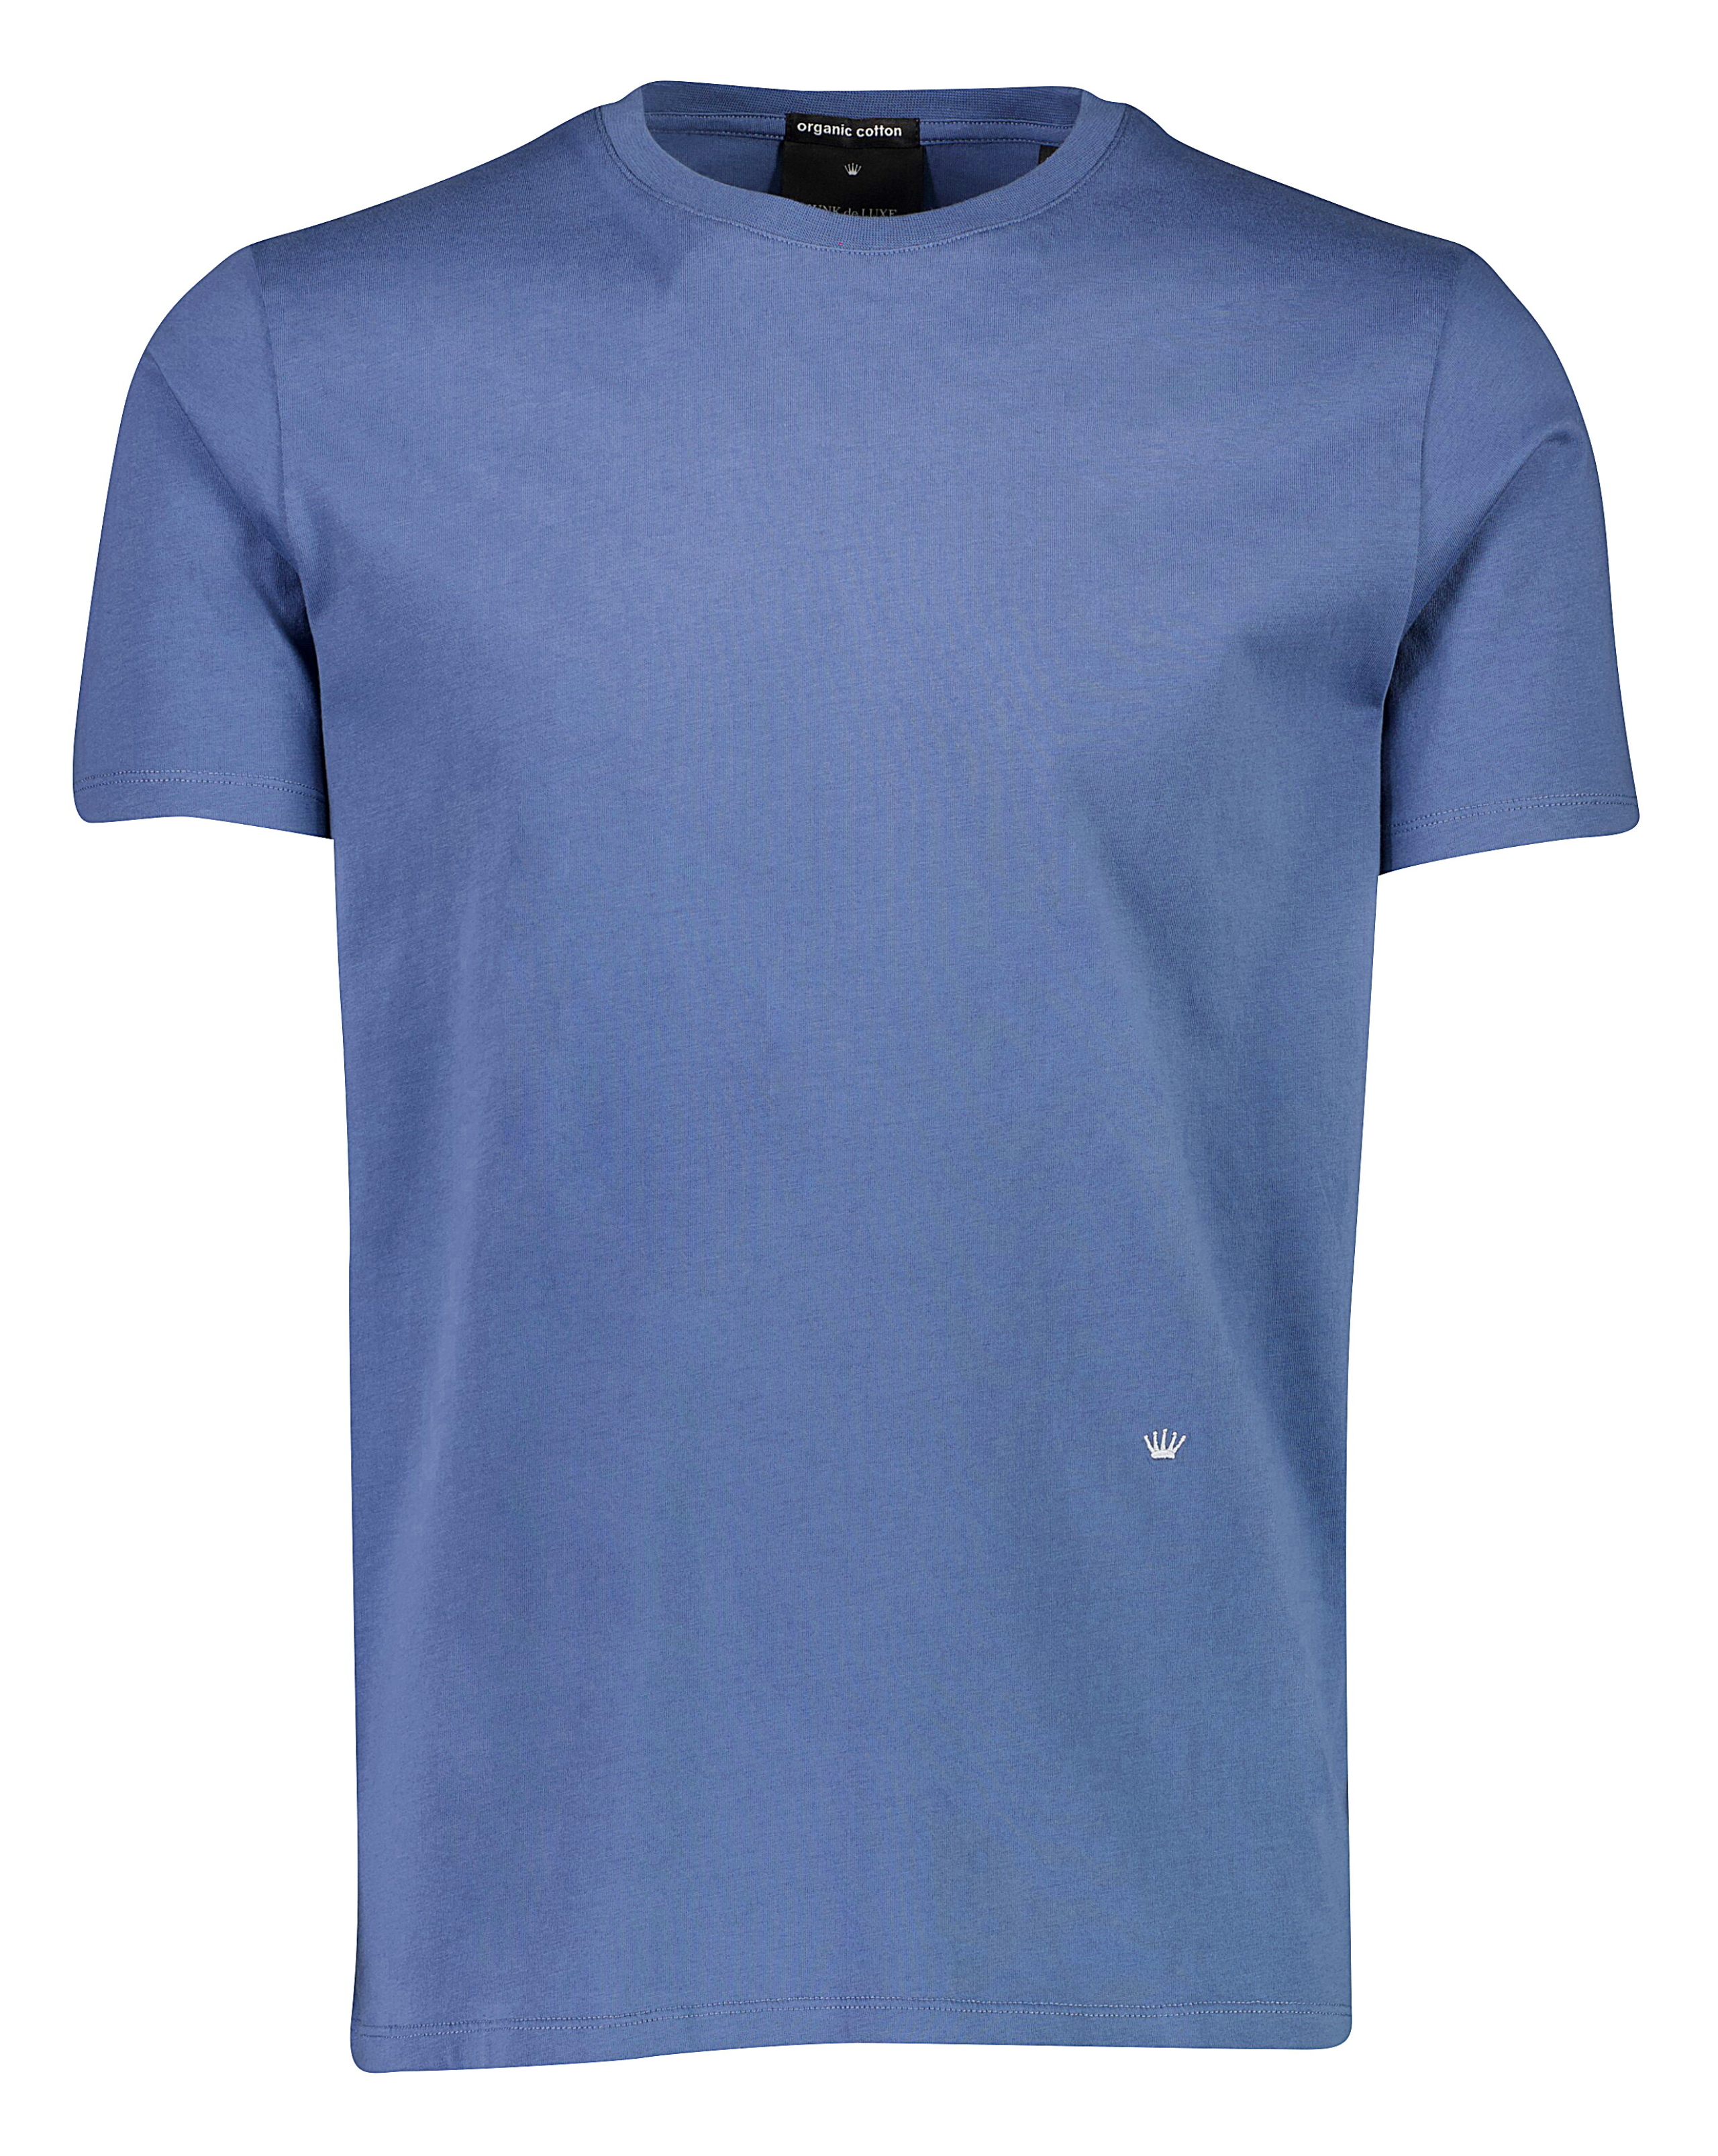 Junk de Luxe T-shirt blå / dusty blue